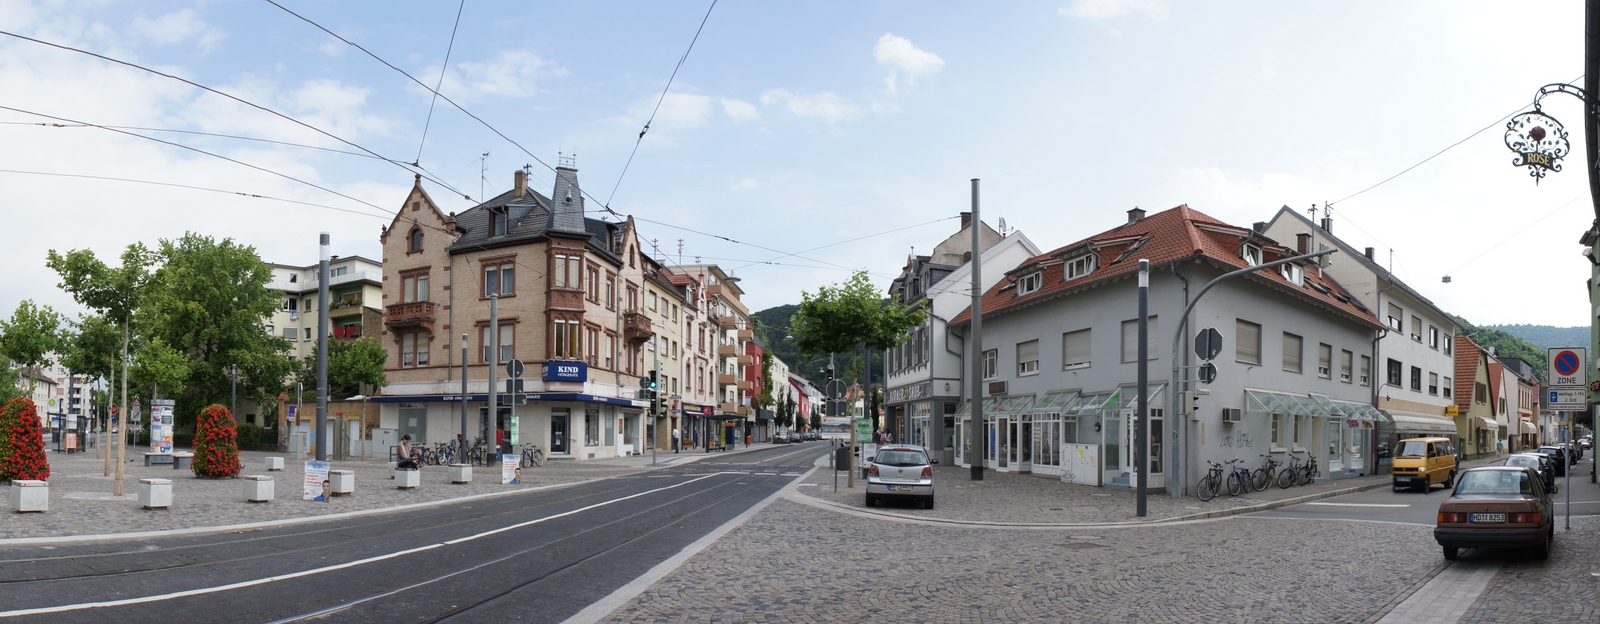 Panorama vom Marktplatz in Heidelberg Rohrbach